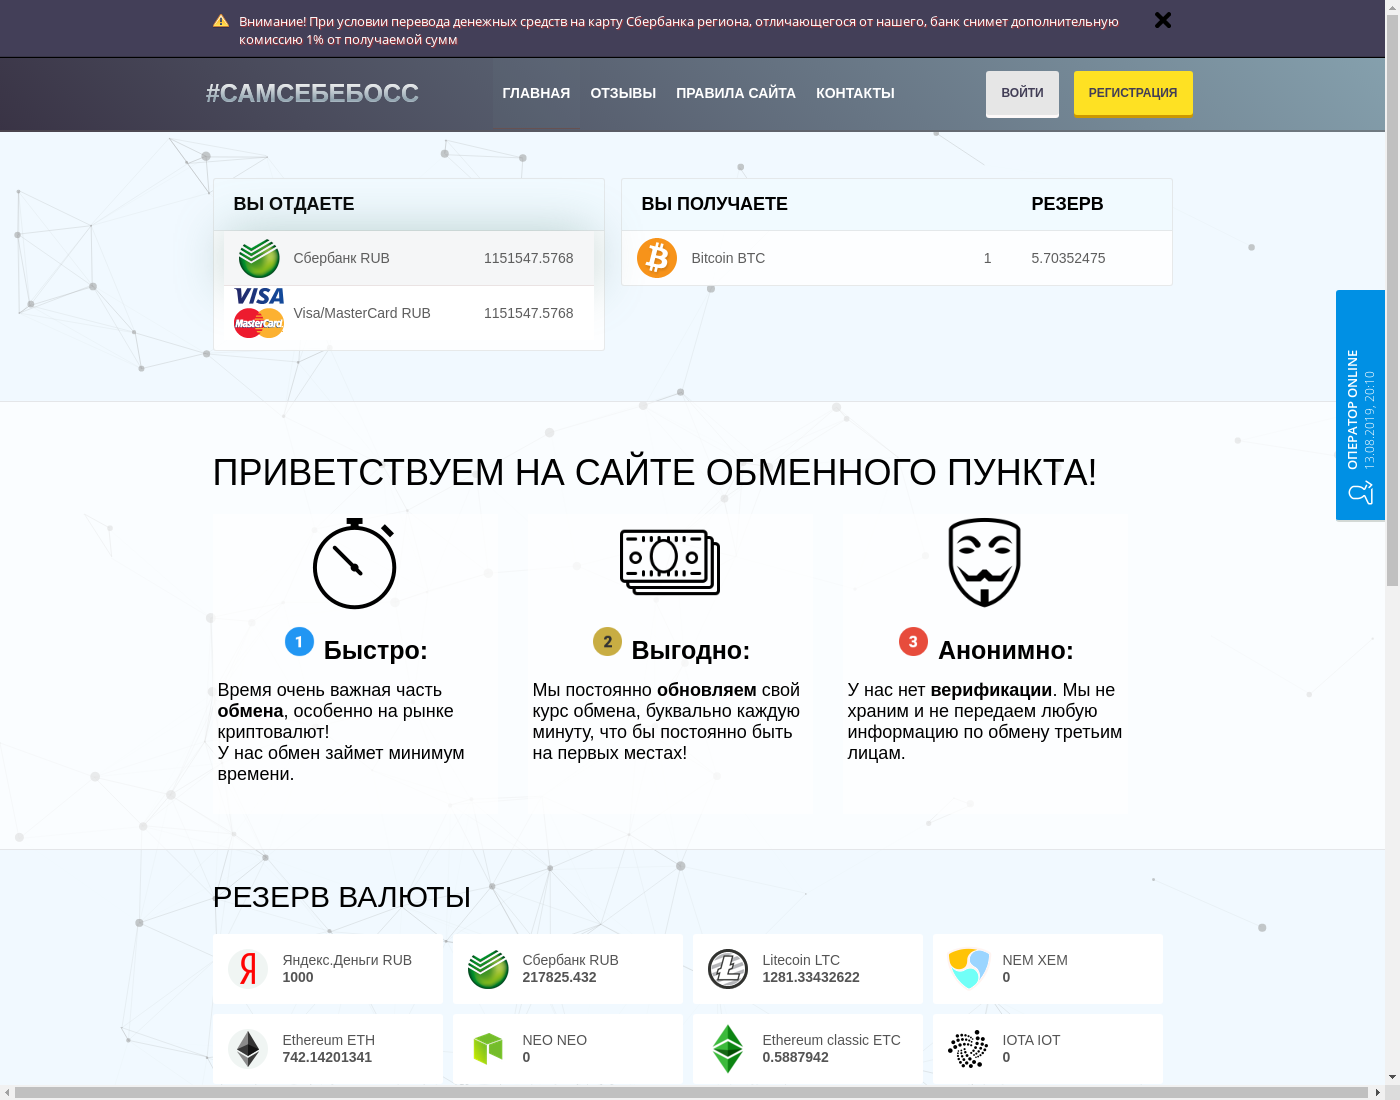 iownboss интерфейс пользователя: домашняя страничка на языке — Русский